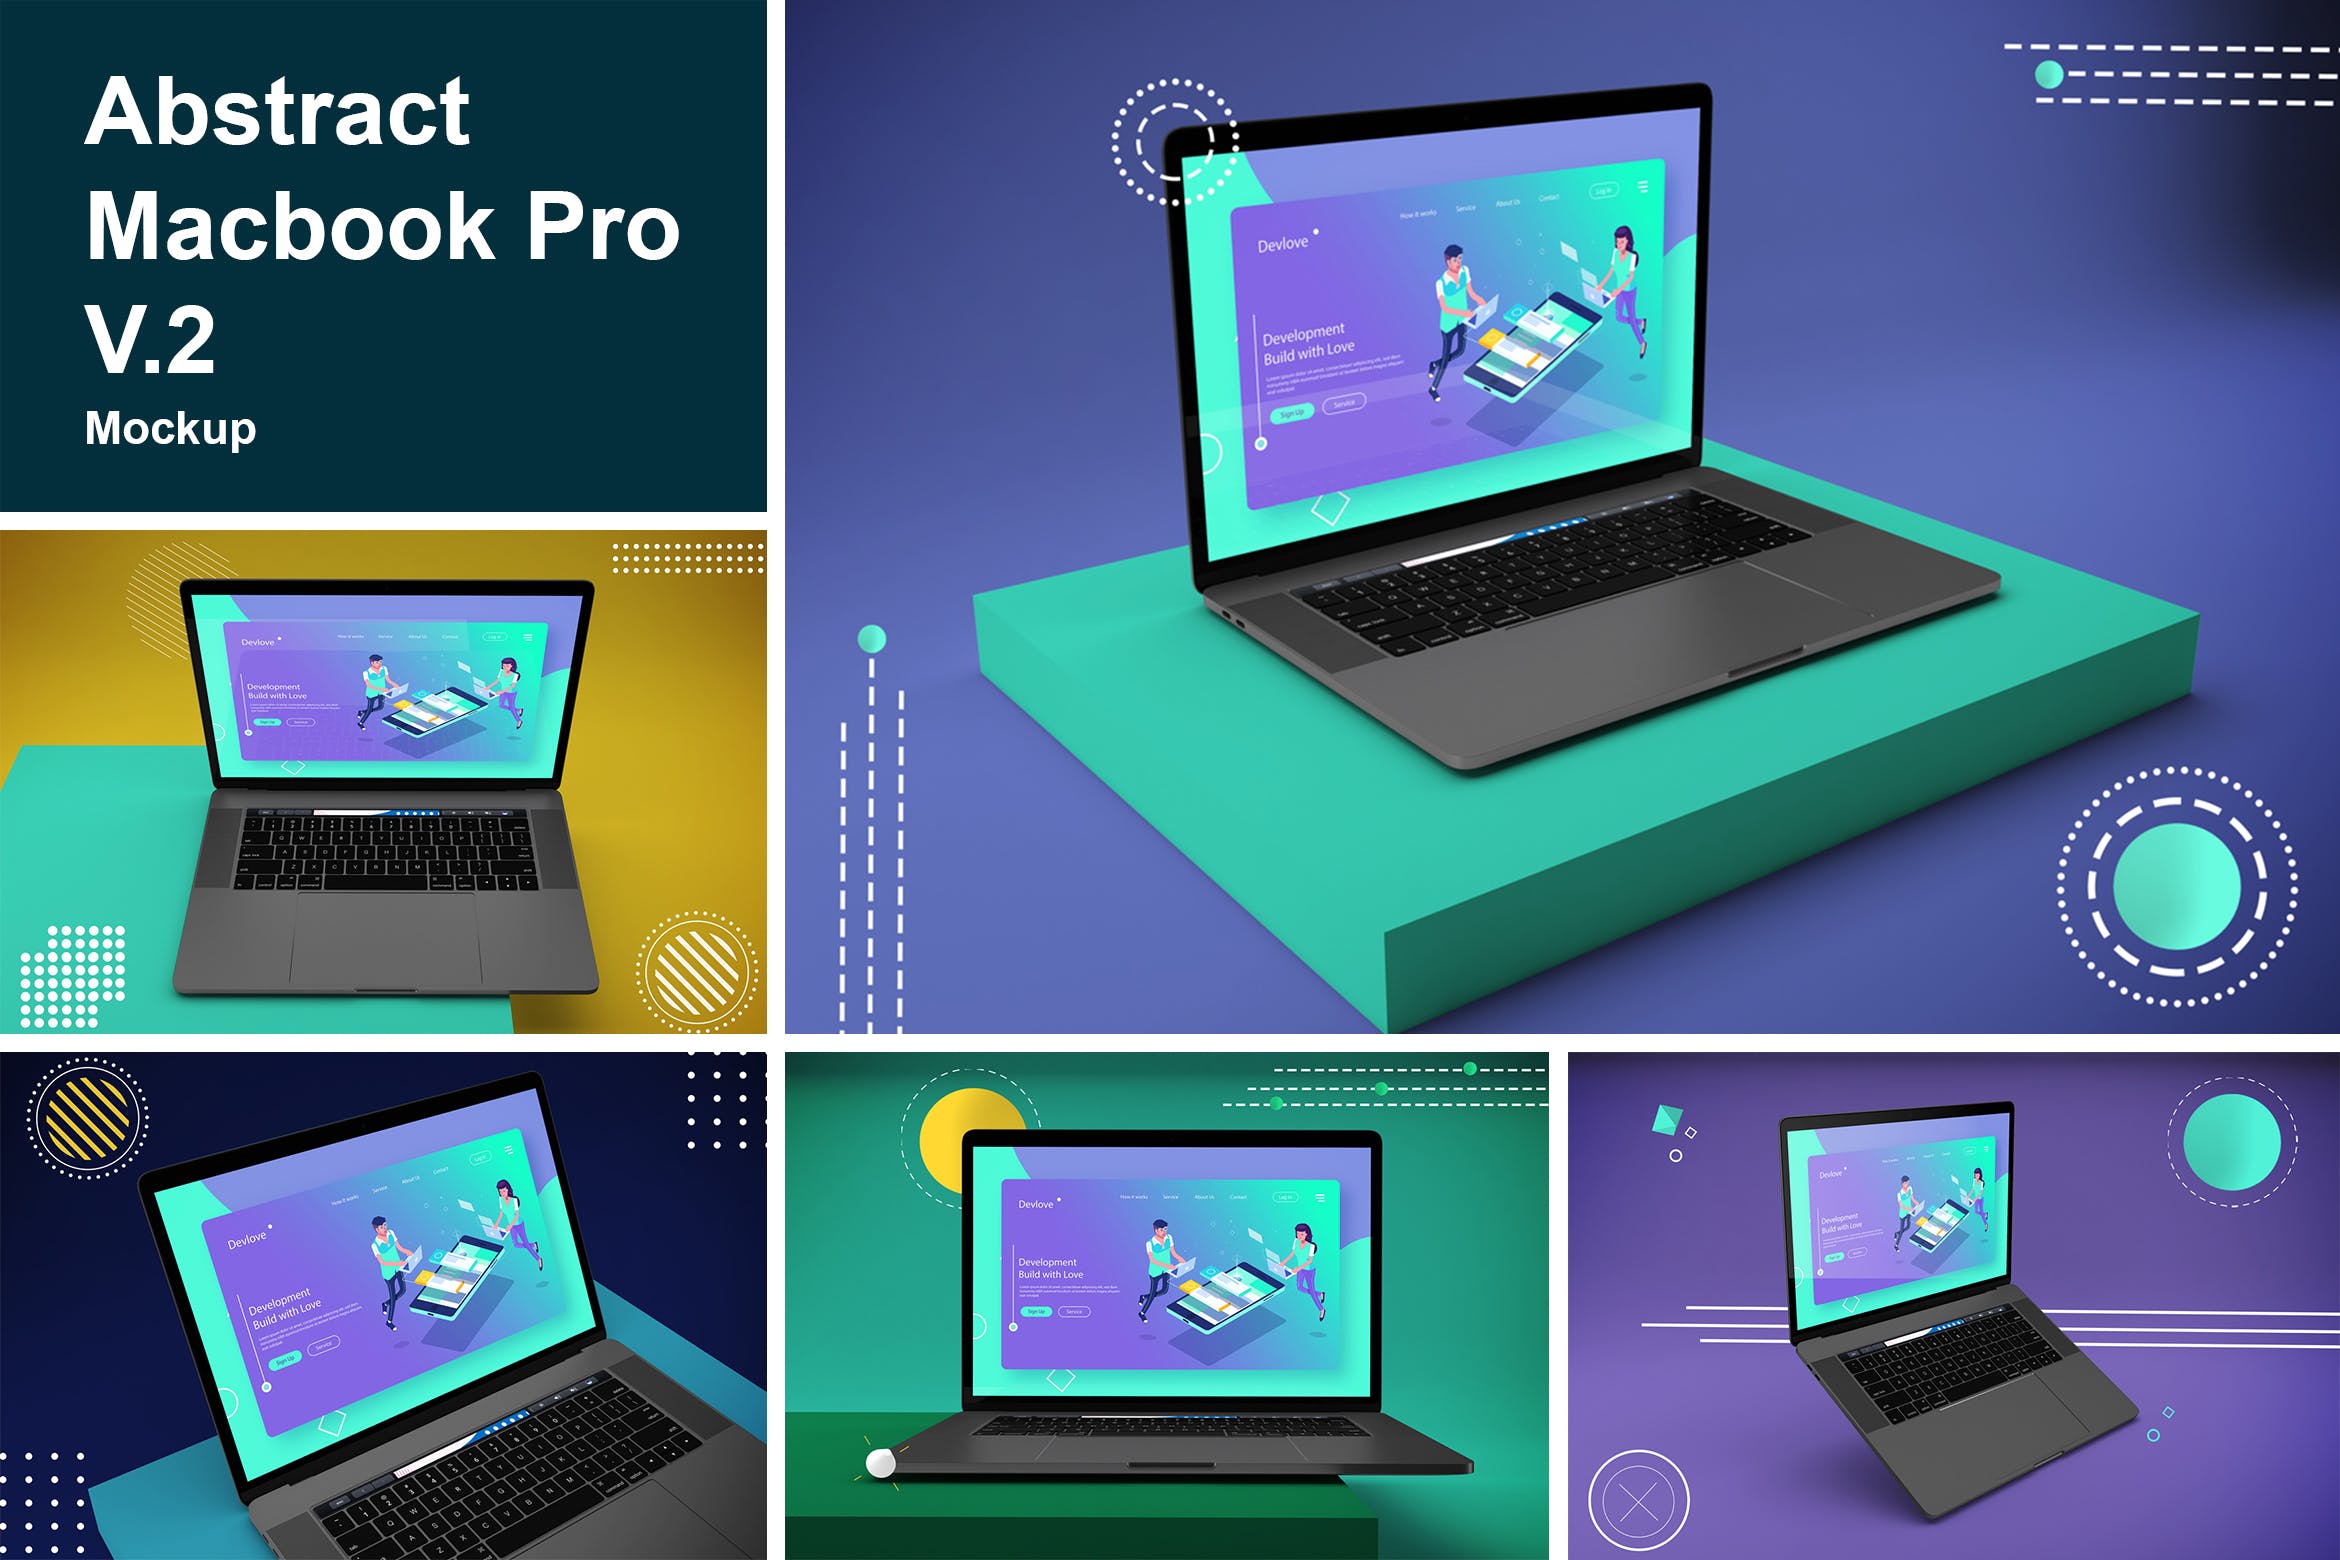 抽象背景Macbook Pro笔记本电脑蚂蚁素材精选样机模板v2 Abstract Macbook Pro Mockup V.2插图